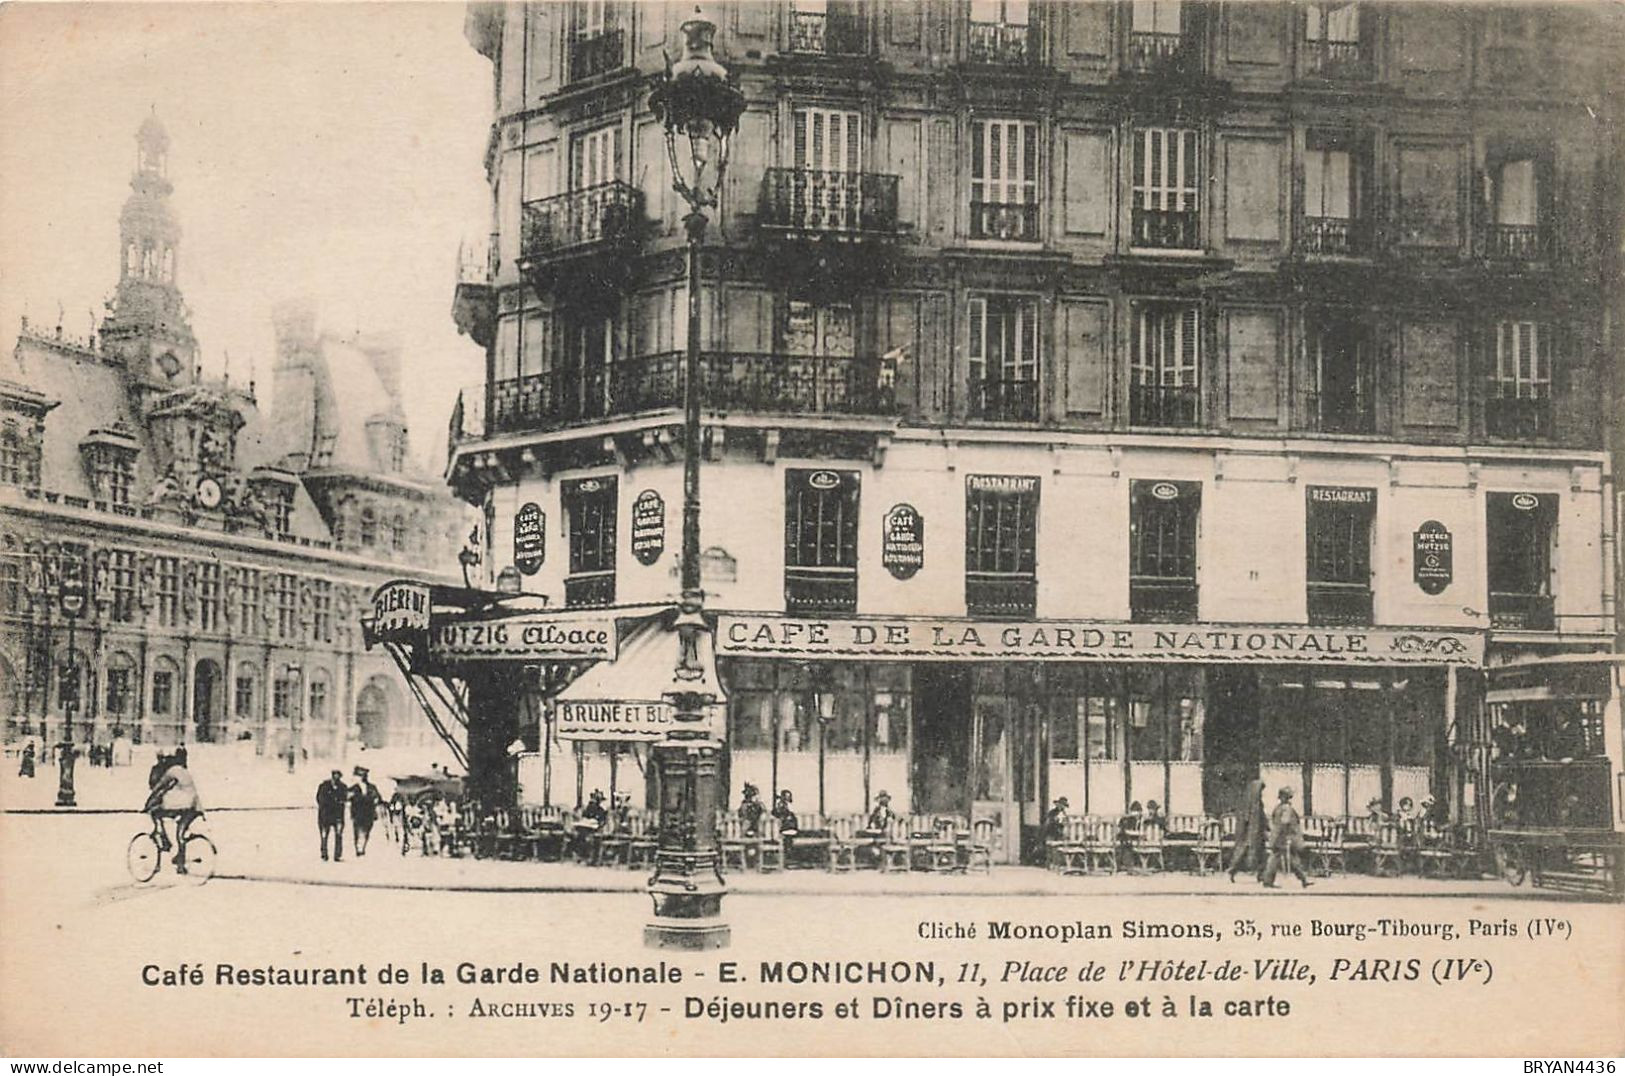 PARIS 16 ème - CAFE RESTAURANT De La GARDE NATIONALE - 11, PLACE De L( HOTEL De VILLE - CARTE POSTALE MENU (9x14cm) - District 04